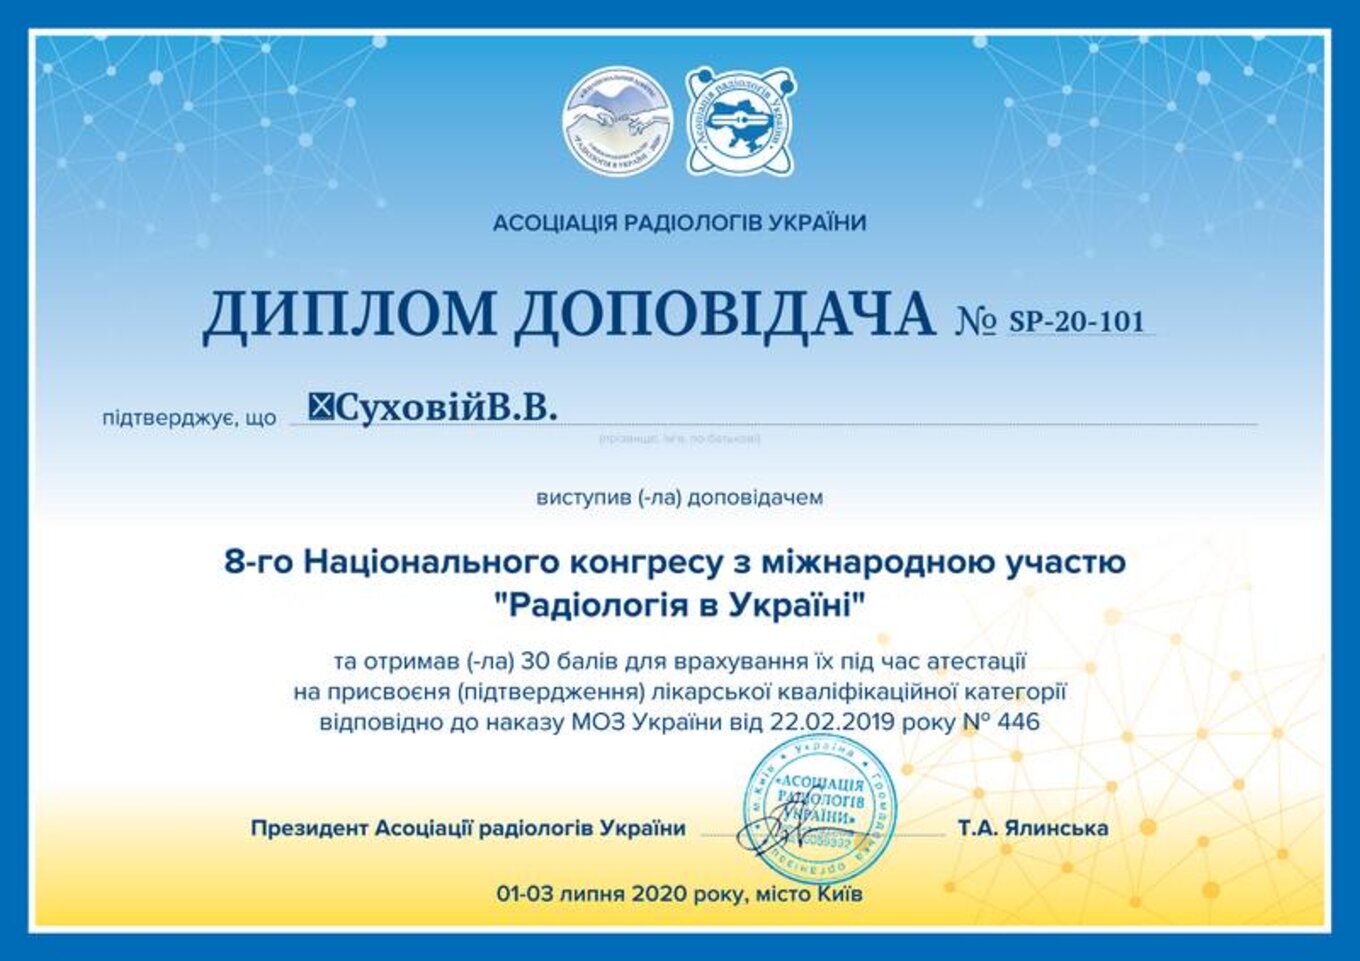 certificates/suhovej-valerij-valerijovich/erc-suhovej-certificates-11.jpg